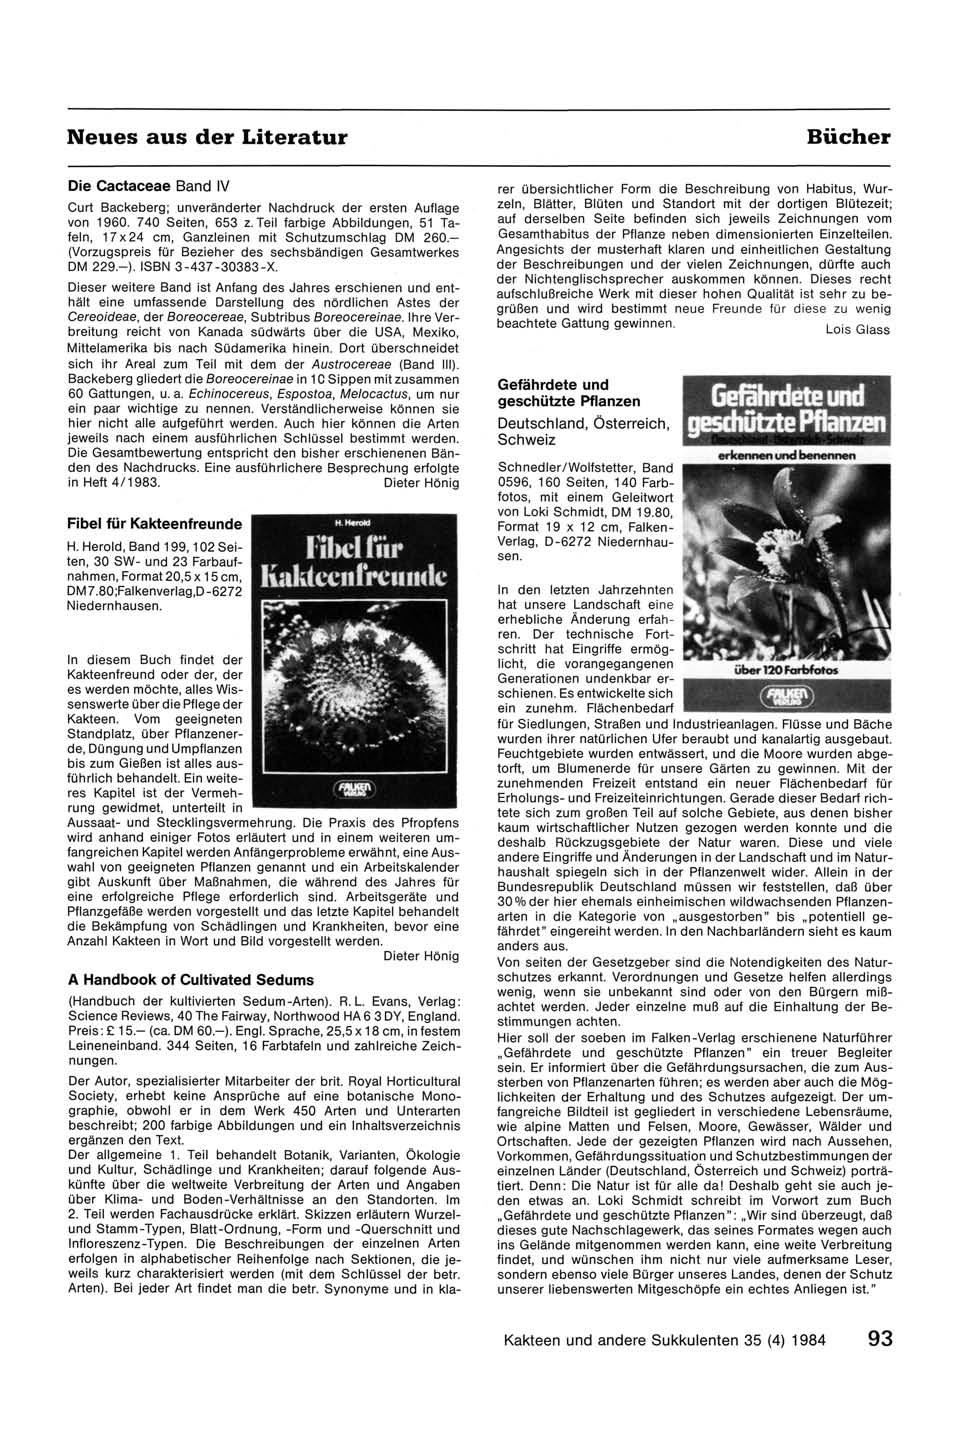 Neues aus der Literatur Die Cactaceae Band IV Curt Backeberg; unveränderter Nachdruck der ersten Auflage von 1960. 740 Seiten, 653 z.